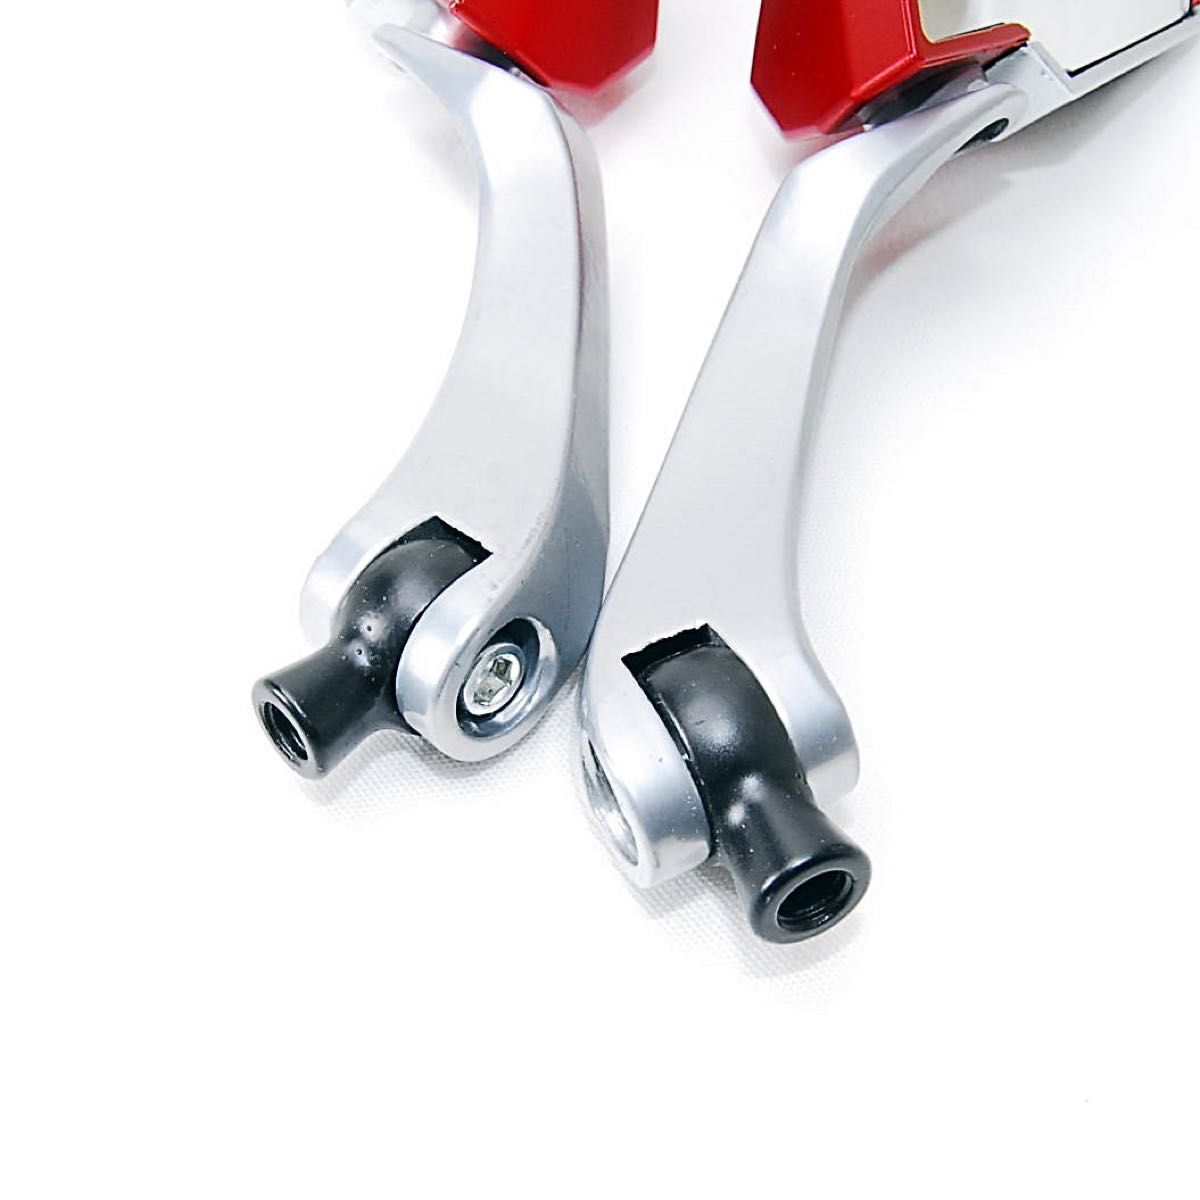 バイクカスタム用 ダイヤミラー レッド 4種類の変換アダプター付 サイドミラー バックミラー オートバイ 原付 スクーター 赤